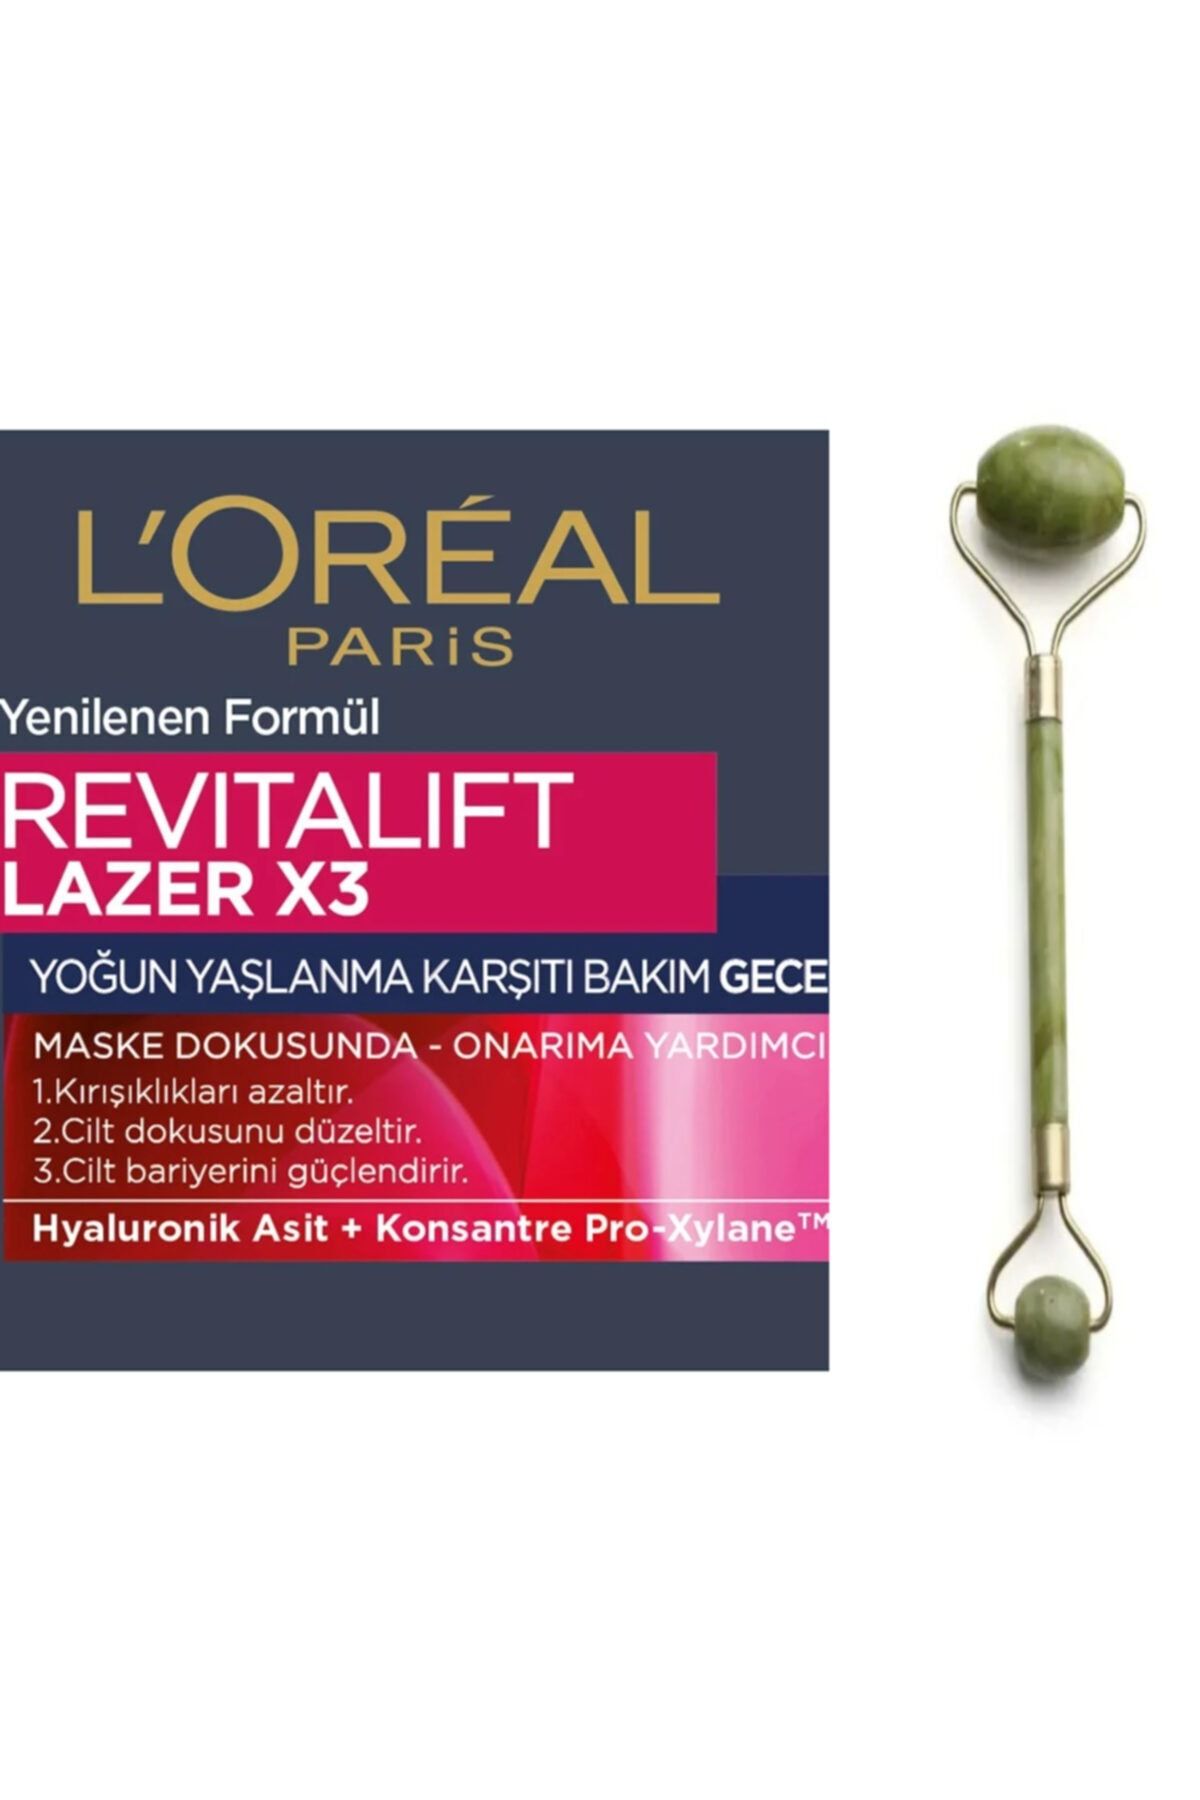 L'Oreal Paris Yaşlanma Karşıtı Gece Kremi - Dermo Expertise Revitalift Laser X3 50 Ml + Yeşimtaşı Masaj Aleti